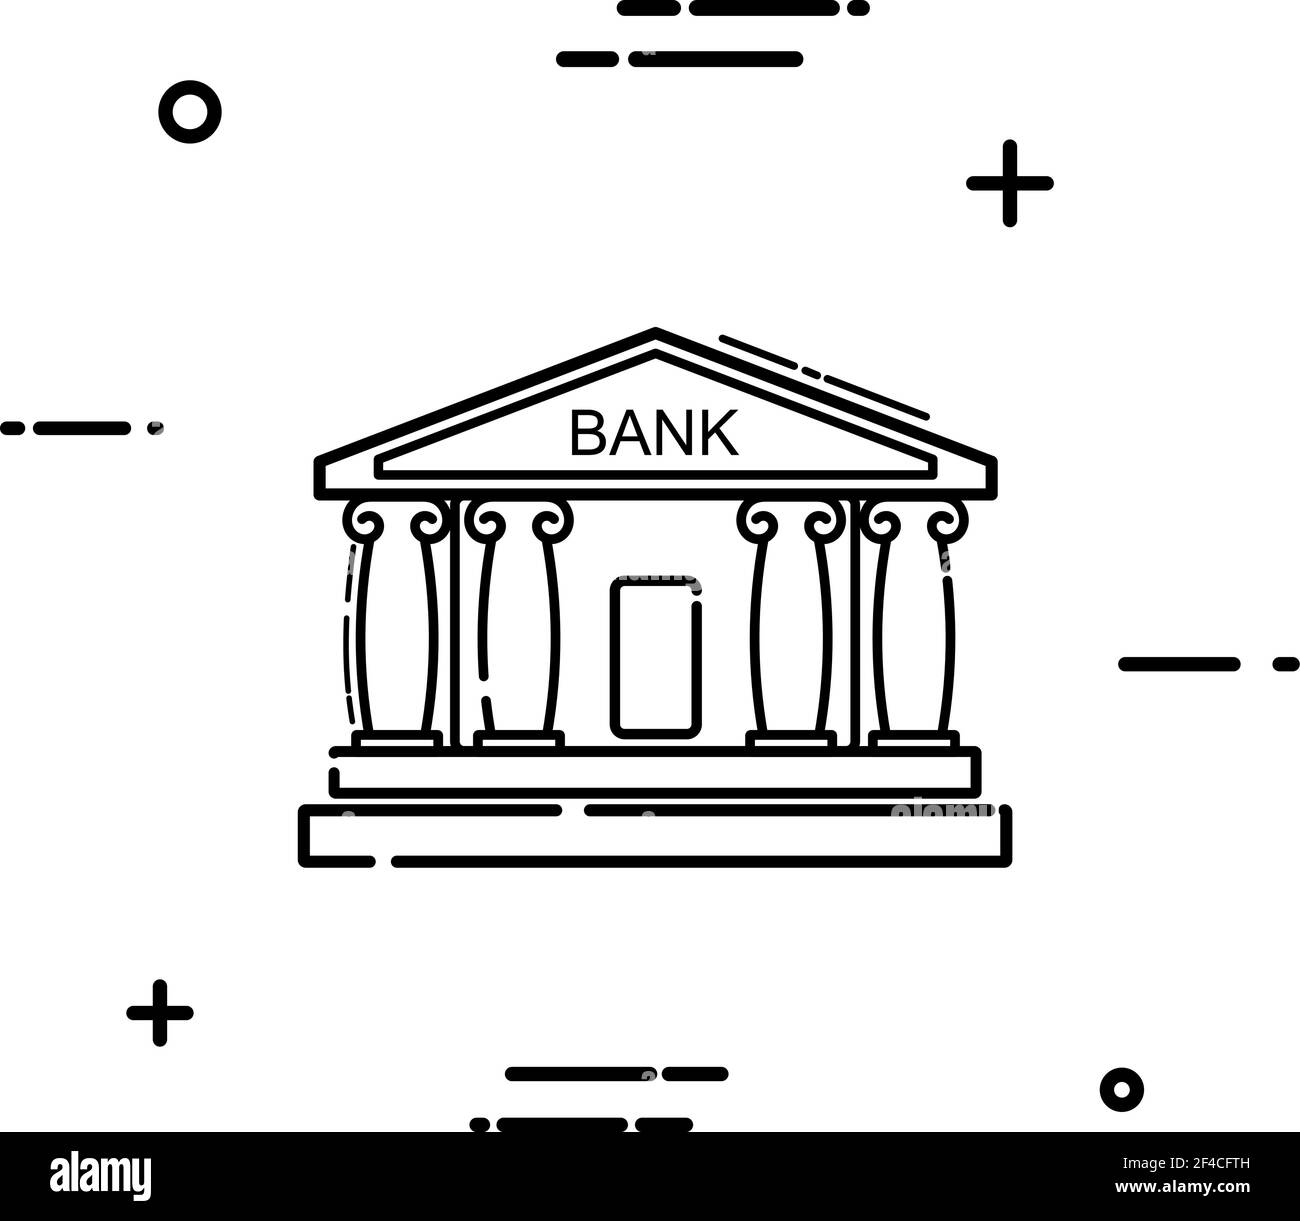 Icona del banco lineare su sfondo bianco. Semplice disegno a linee di un edificio di banca con colonne. Illustrazione vettoriale Illustrazione Vettoriale